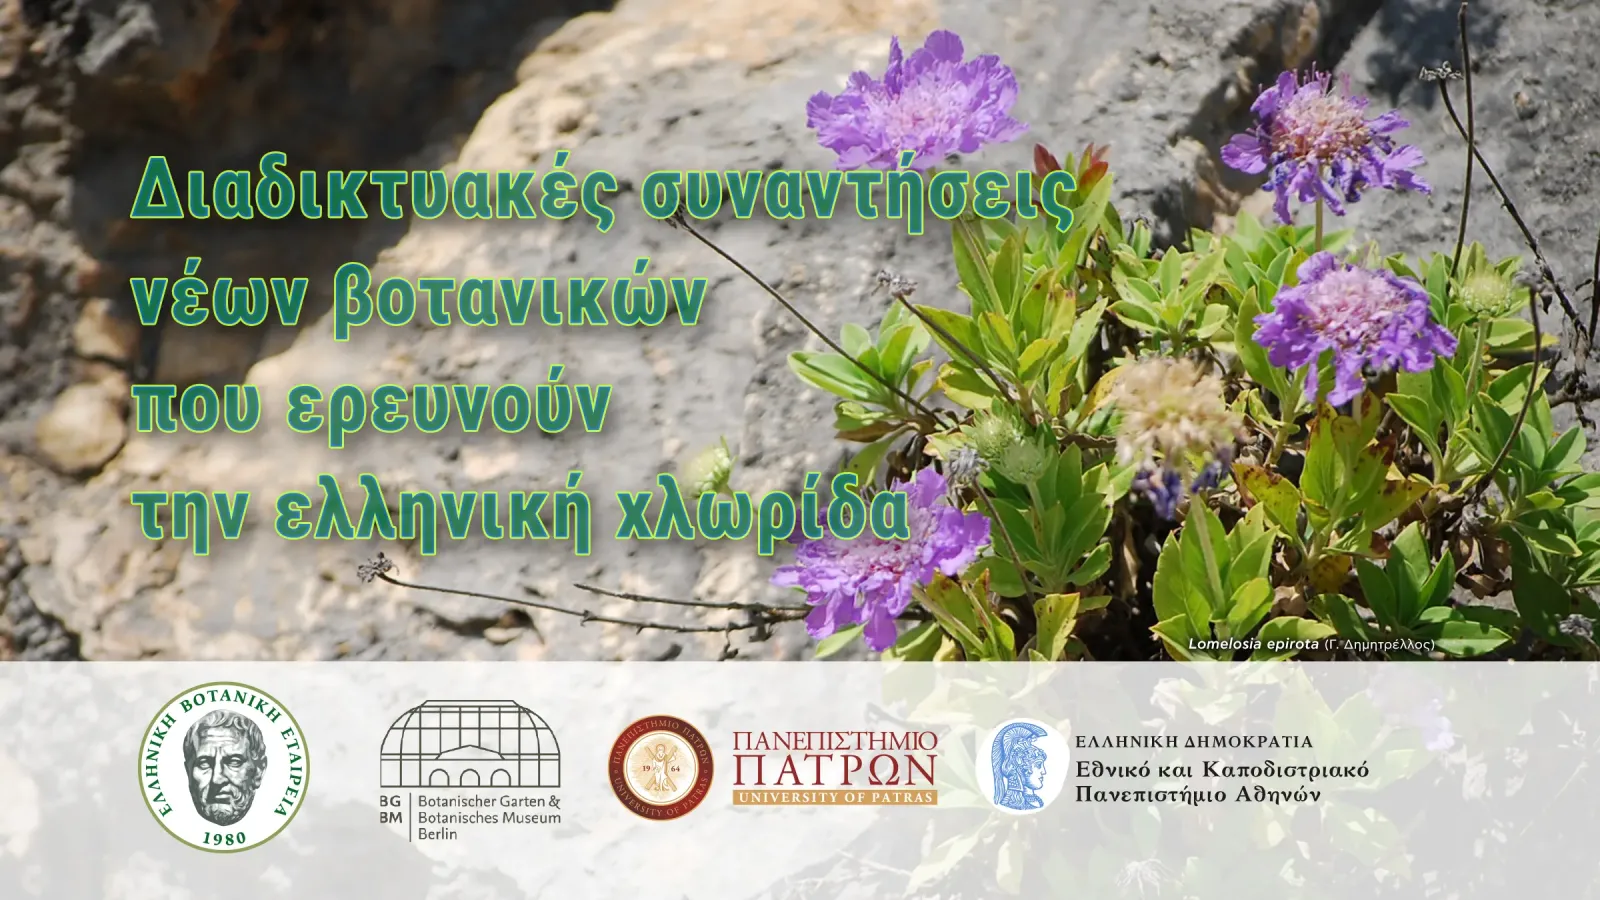 Διαδικτυακές συναντήσεις νέων βοτανικών  που ερευνούν την ελληνική χλωρίδα